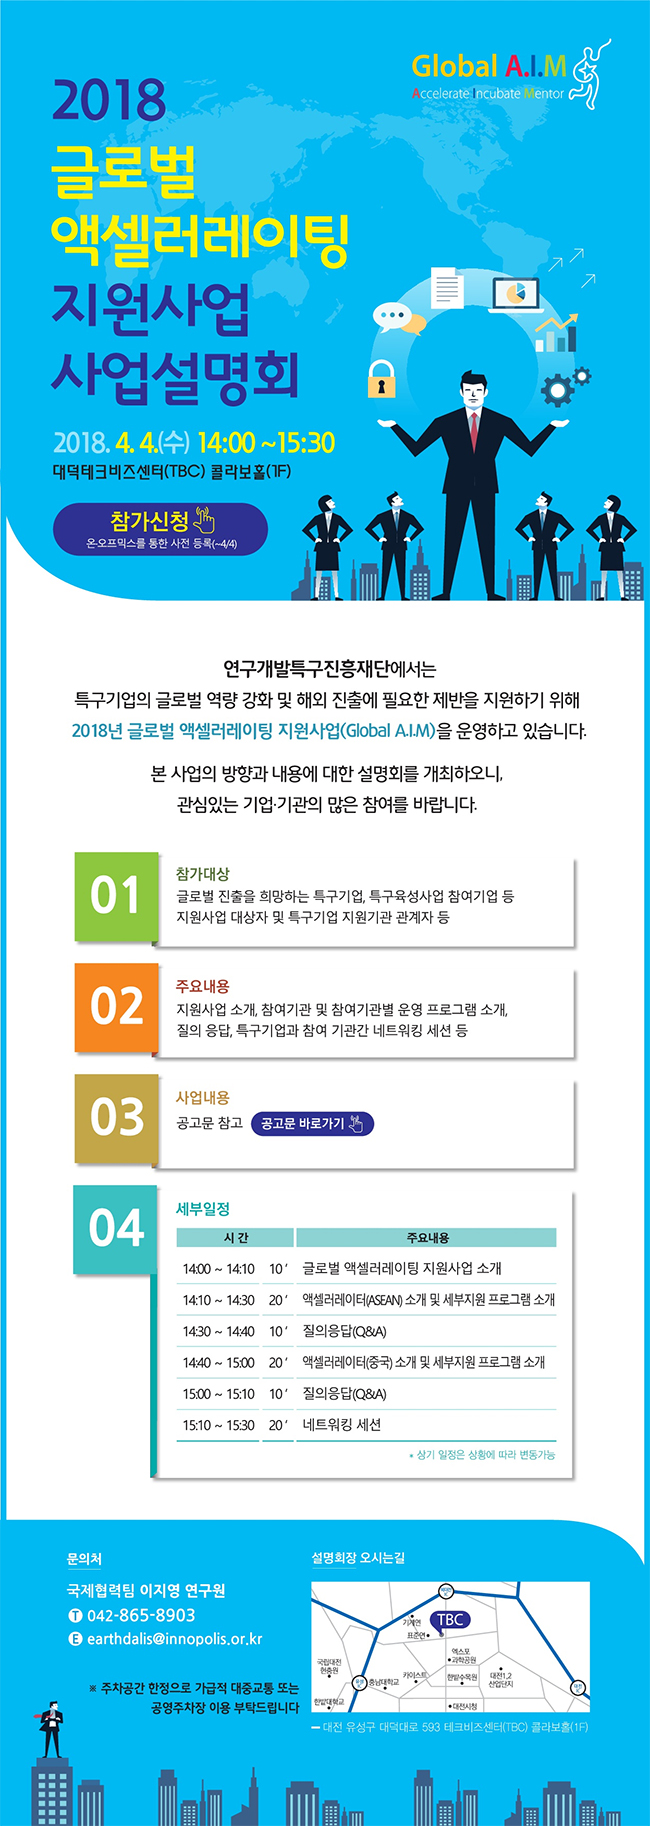 광주이노비즈센터 개관식 개최 아래 내용 참고바랍니다.